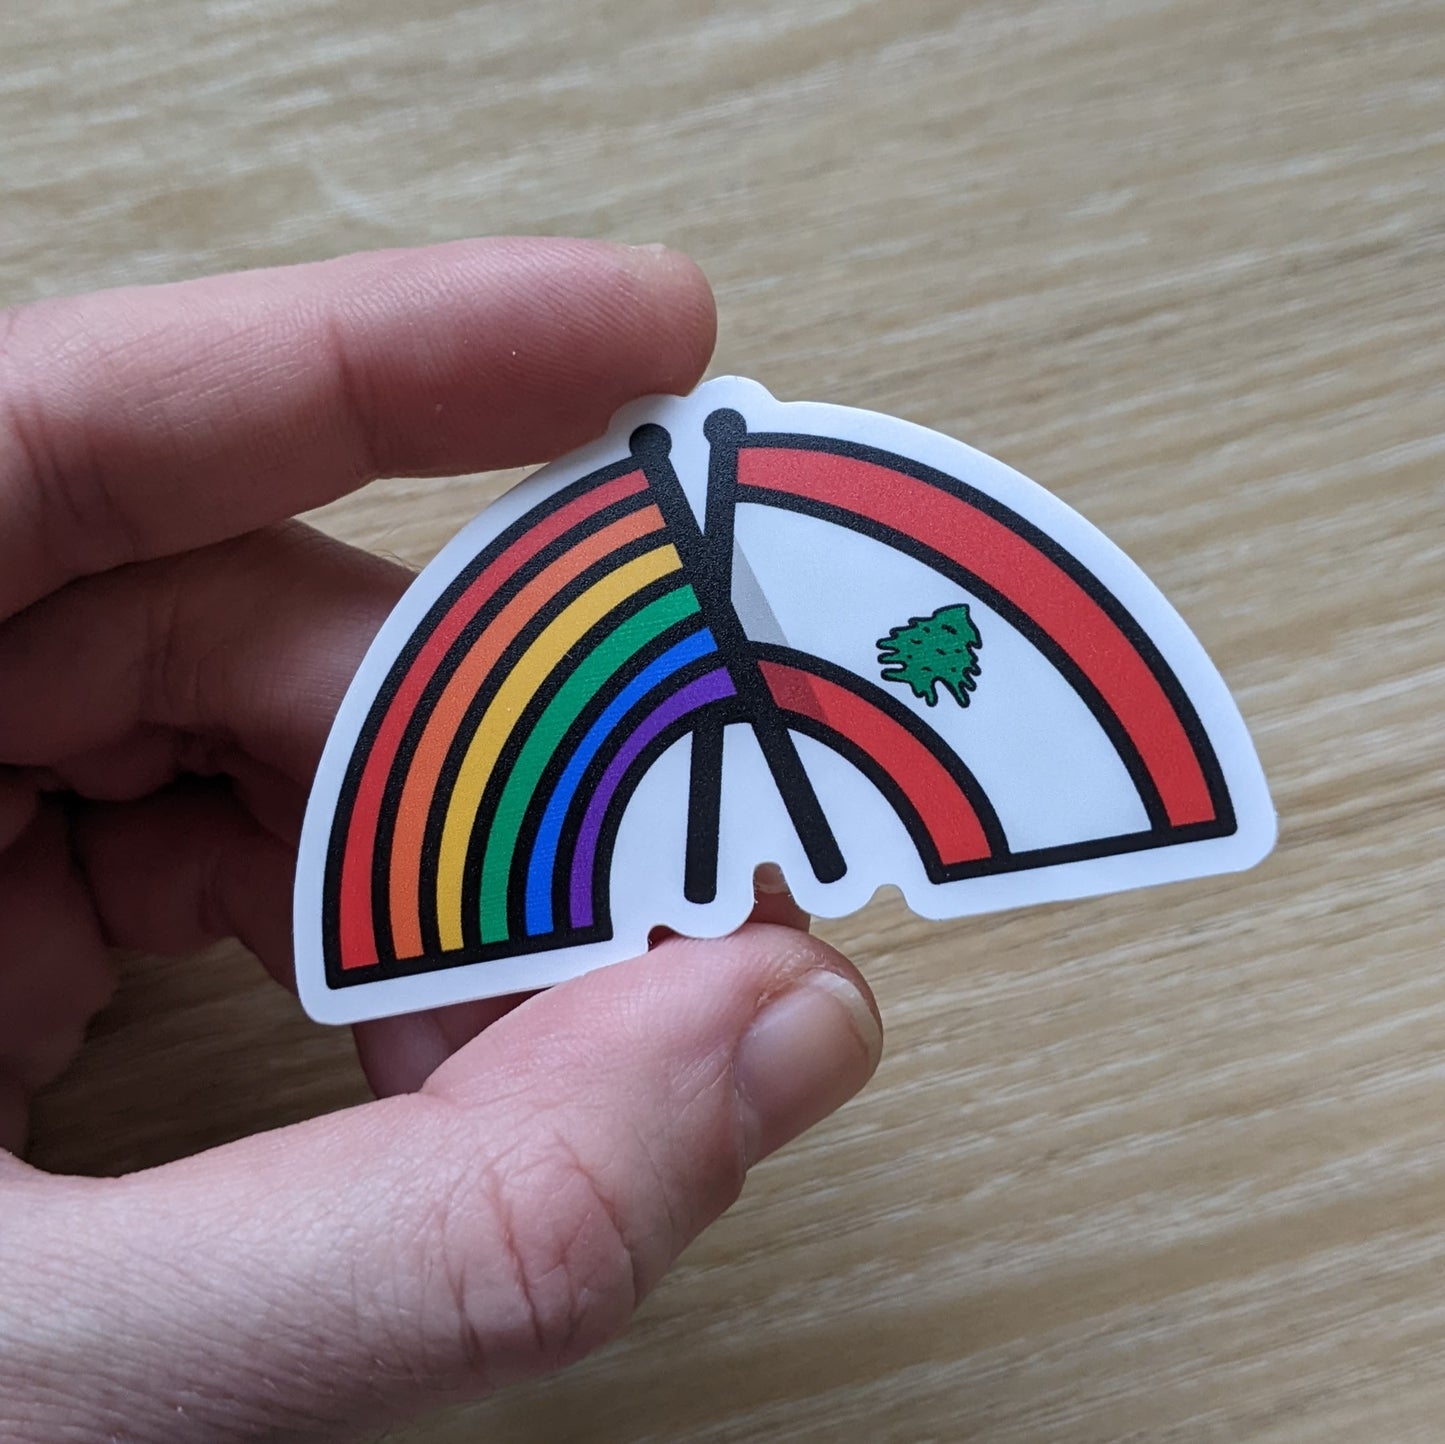 Lebanon Pride | Sticker